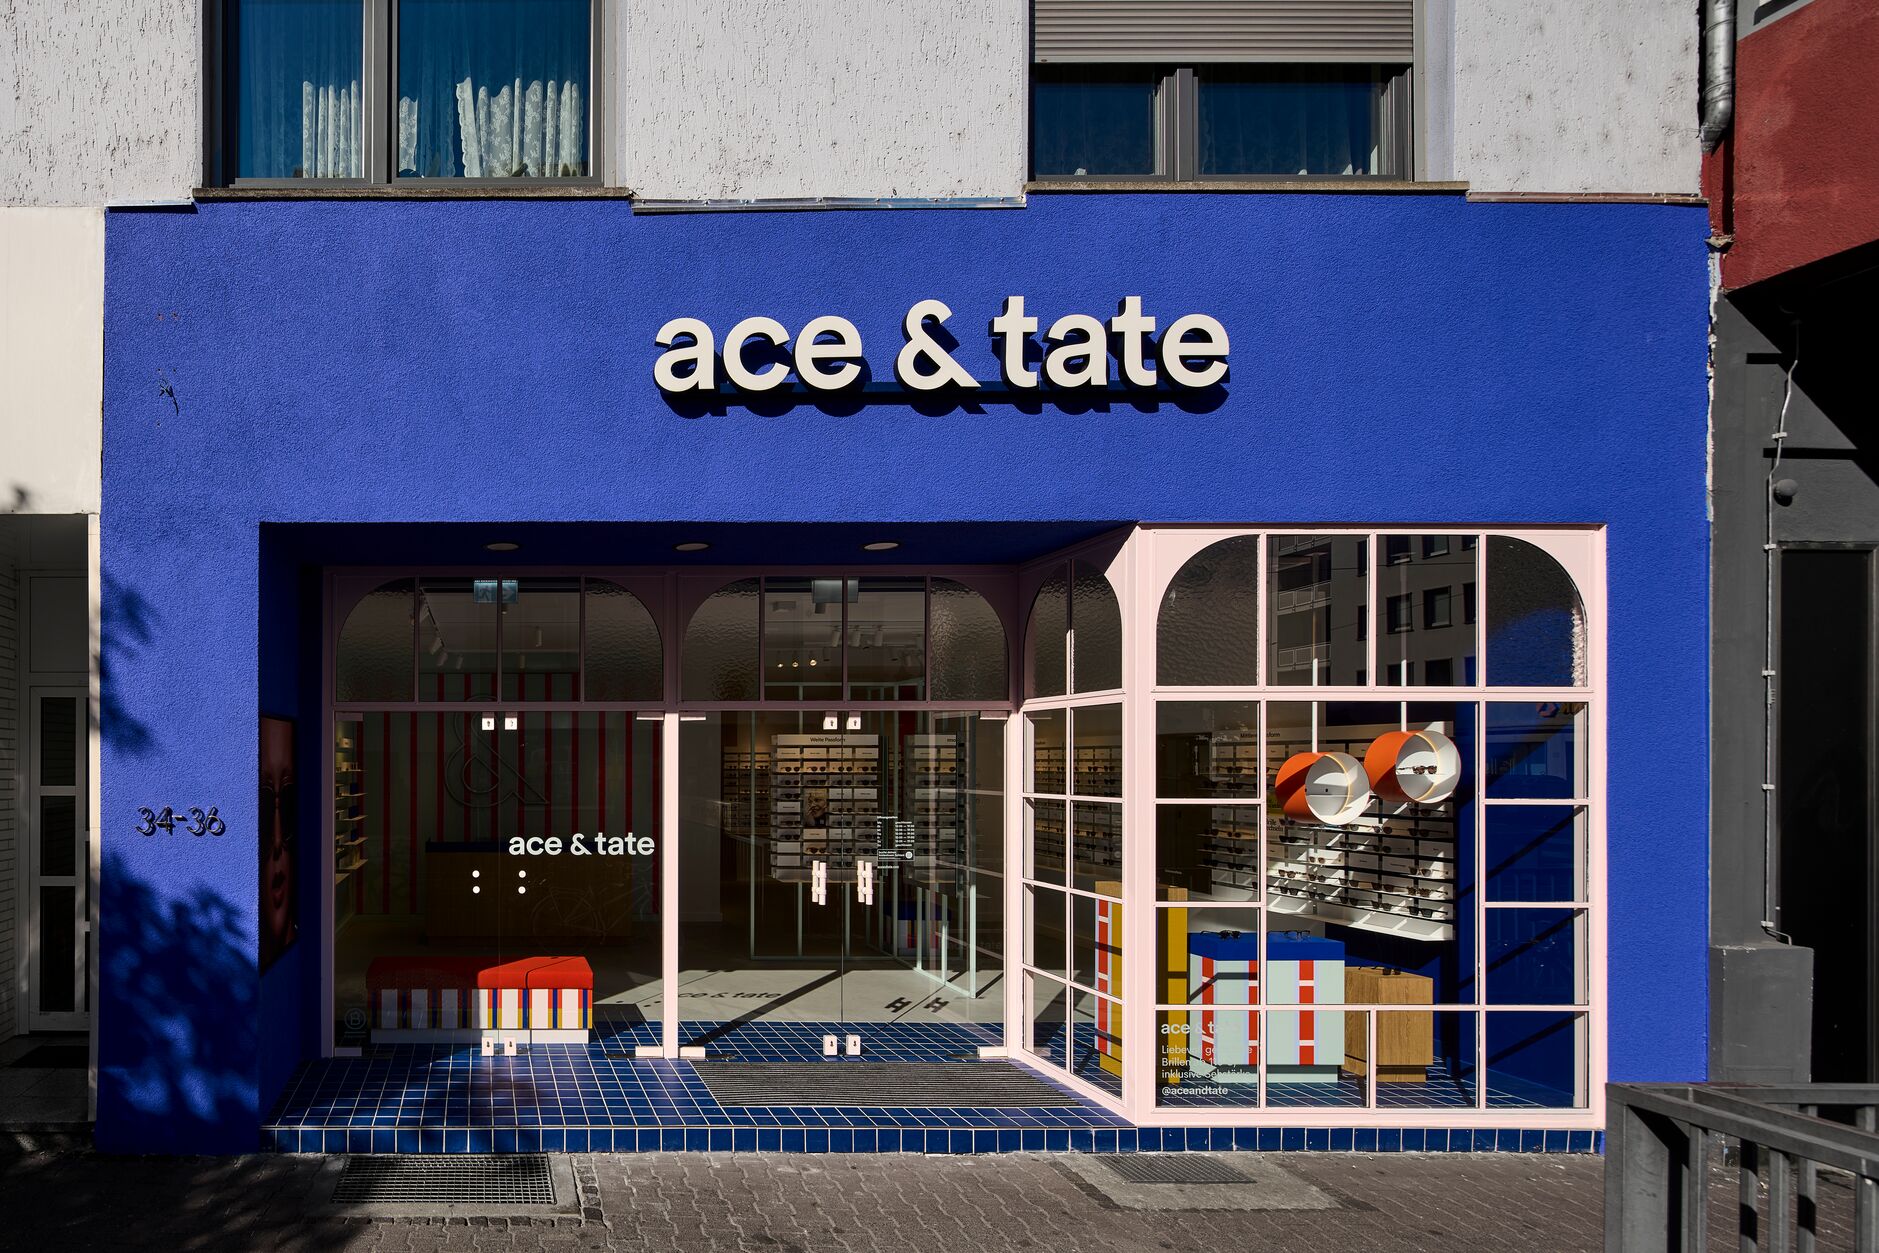 Ace & Tate, Schweizerstrasse 34-36 in Frankfurt am Main